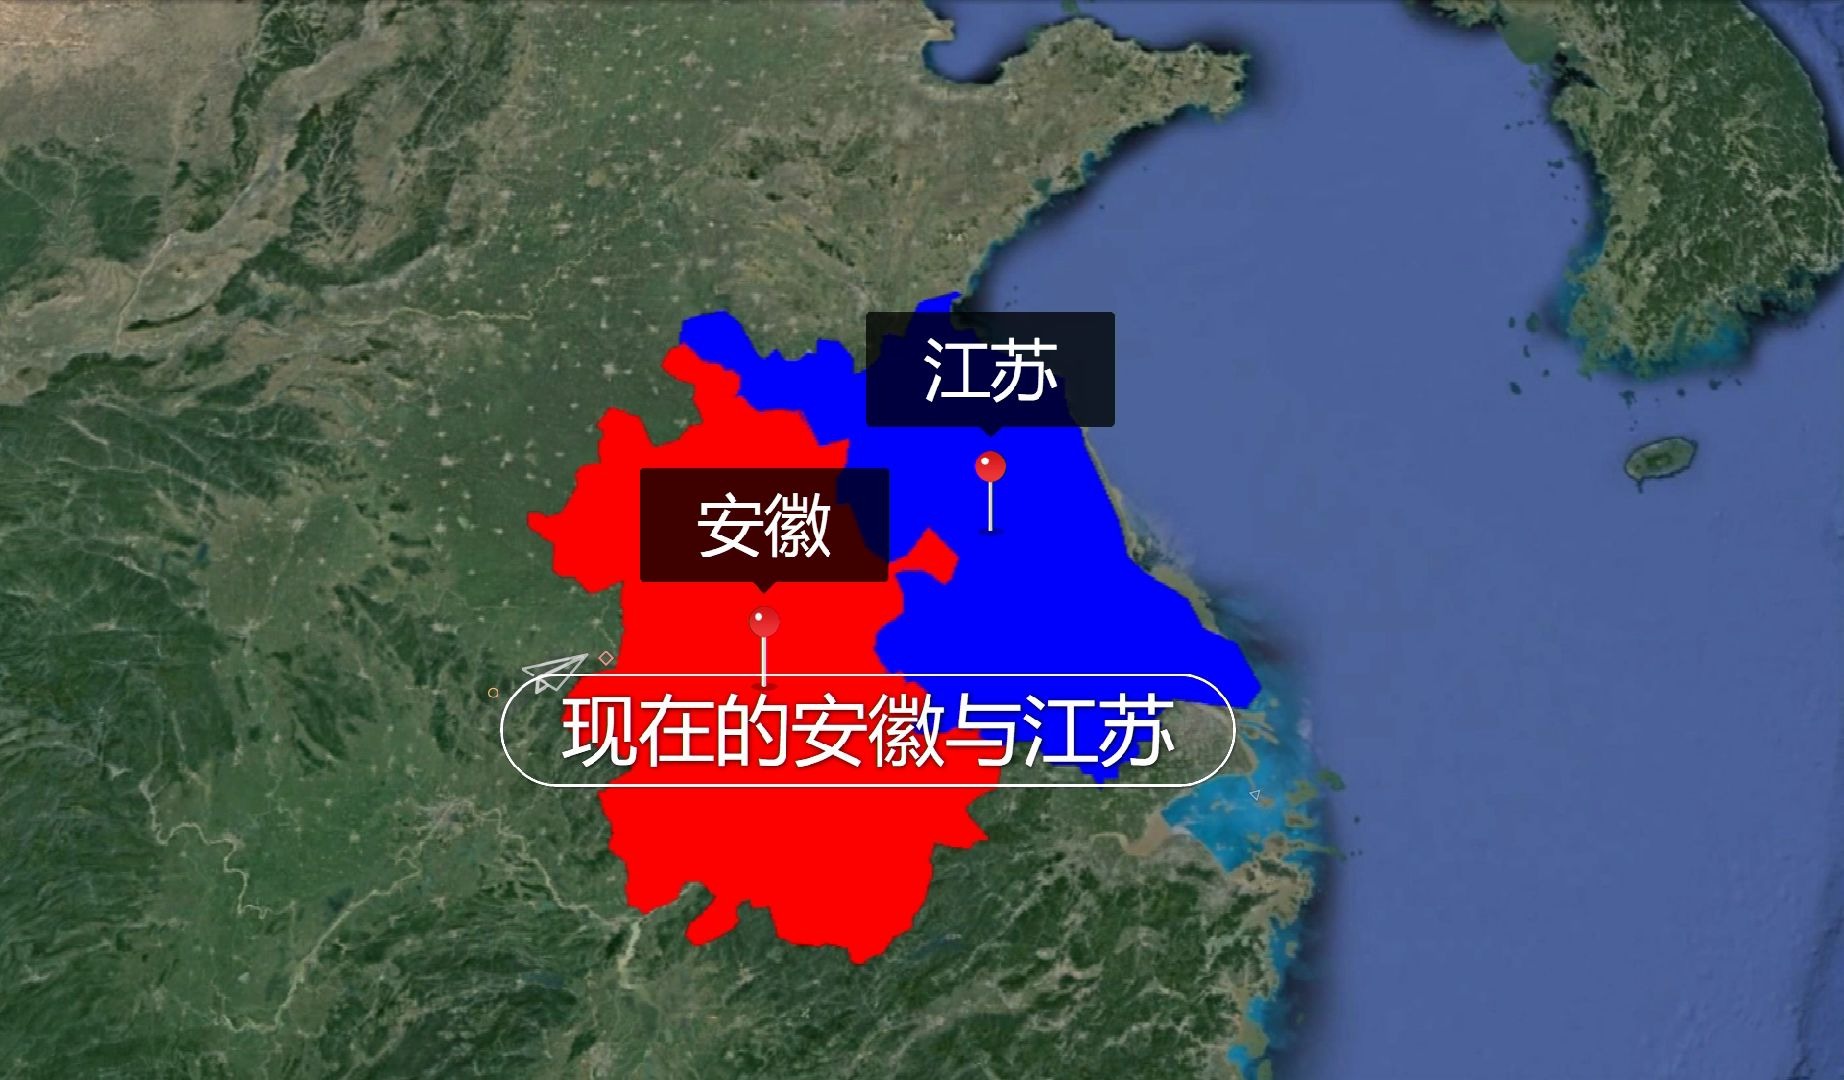 安徽省江苏省合并地图图片